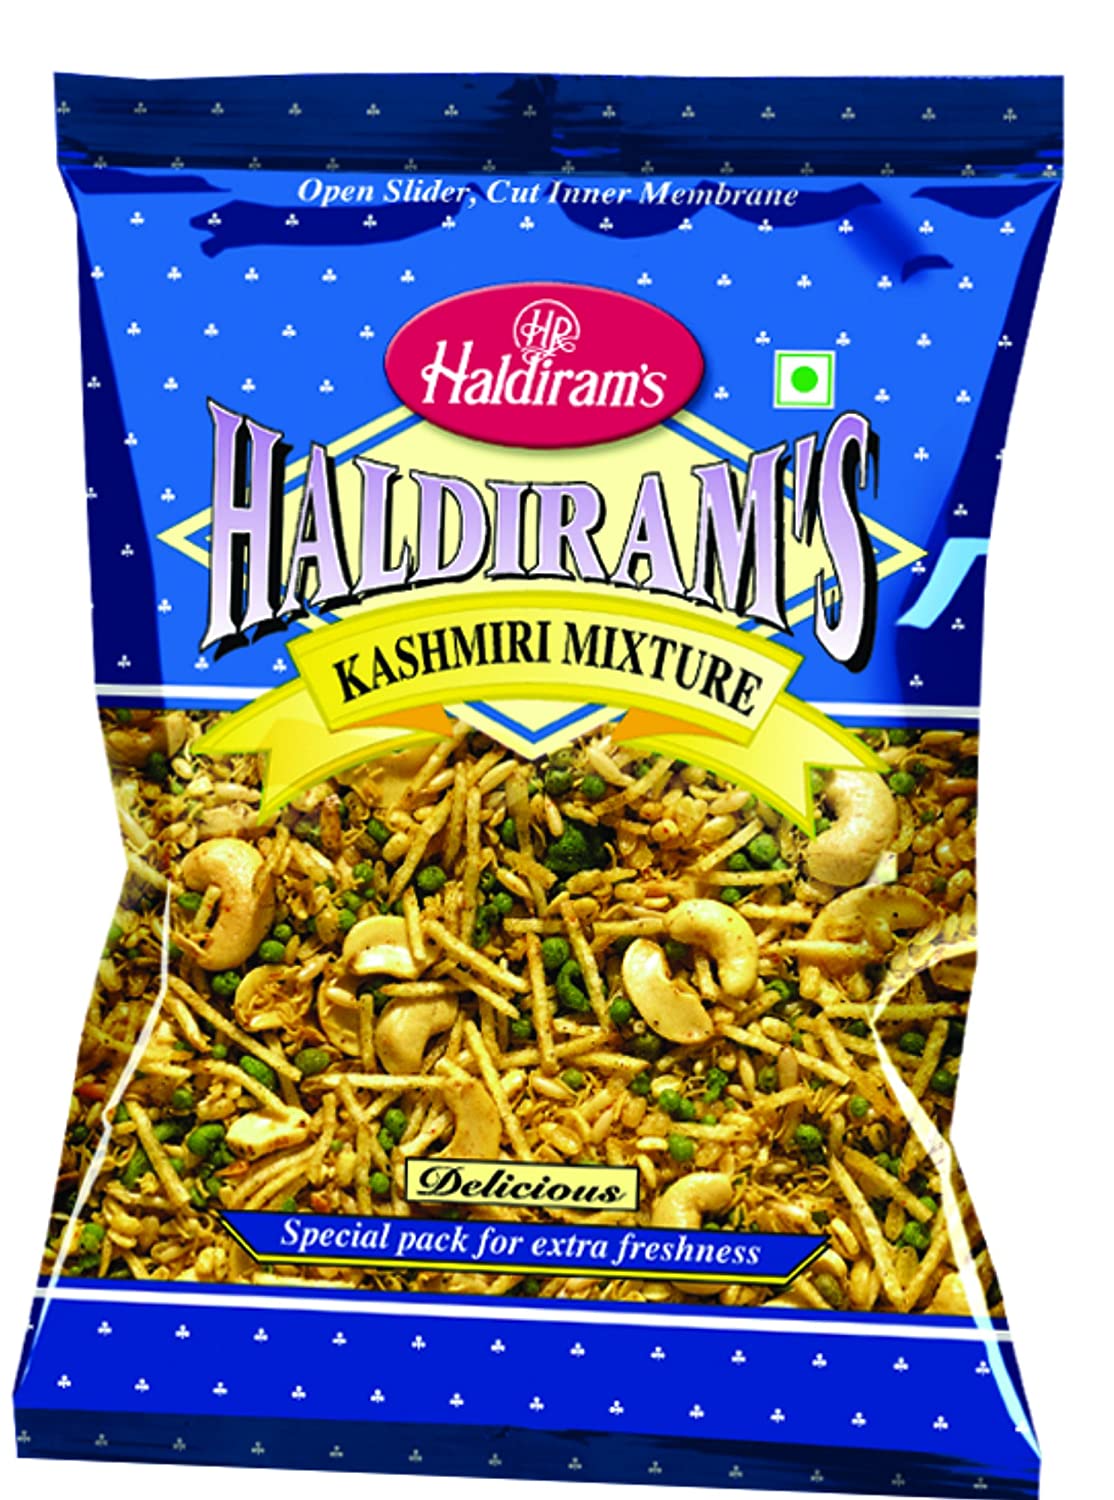 Haldiram's kashmiri mixture